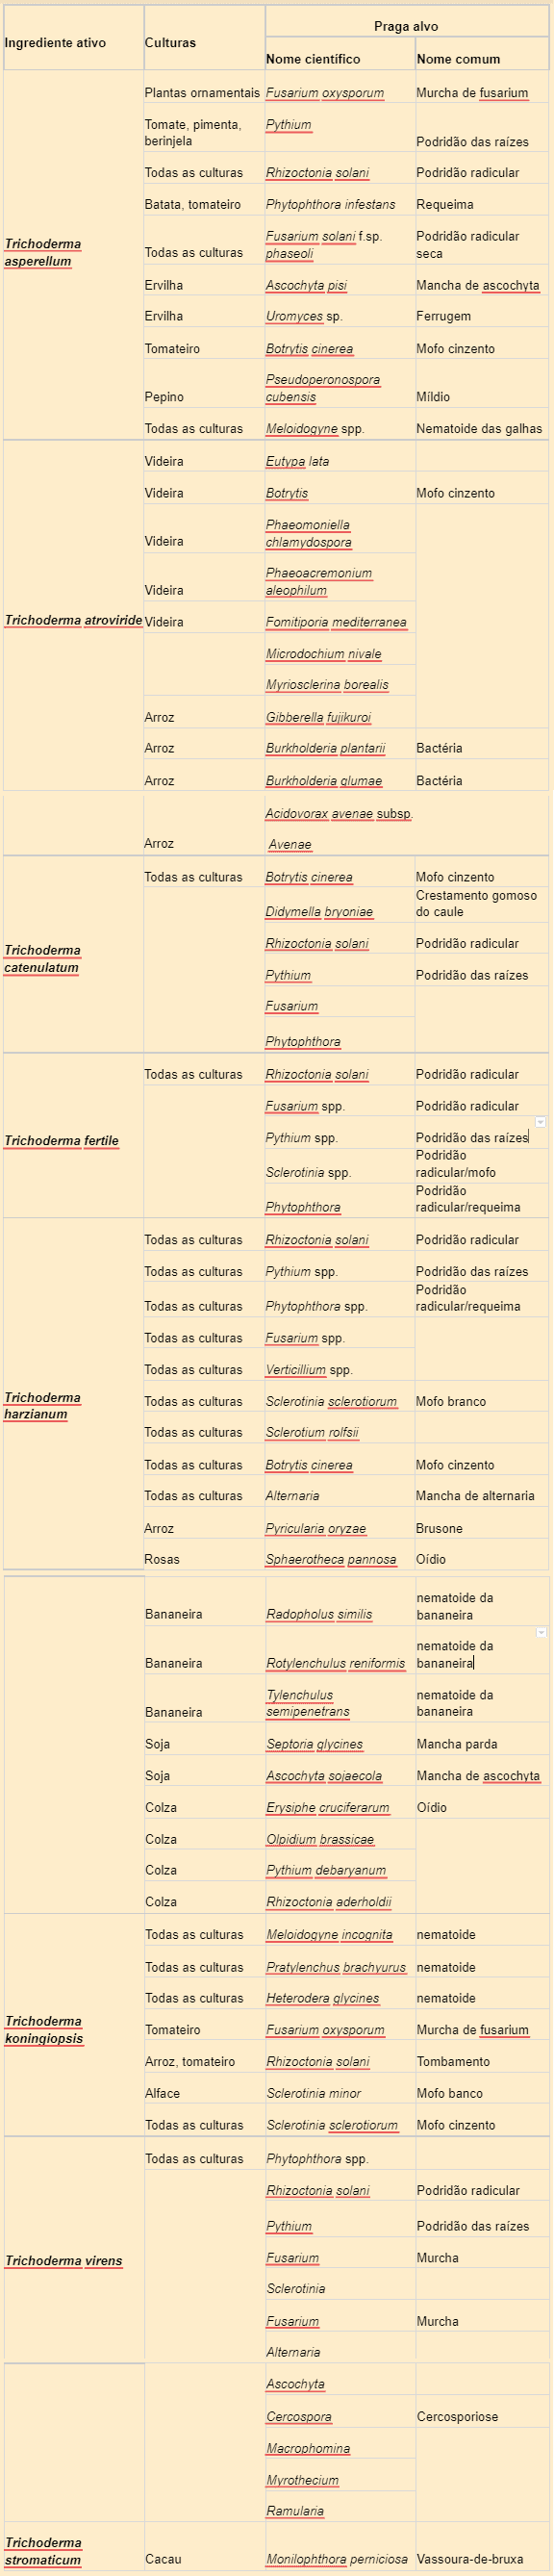 tabela com produtos indicados e para o controle de quais doenças são recomendados